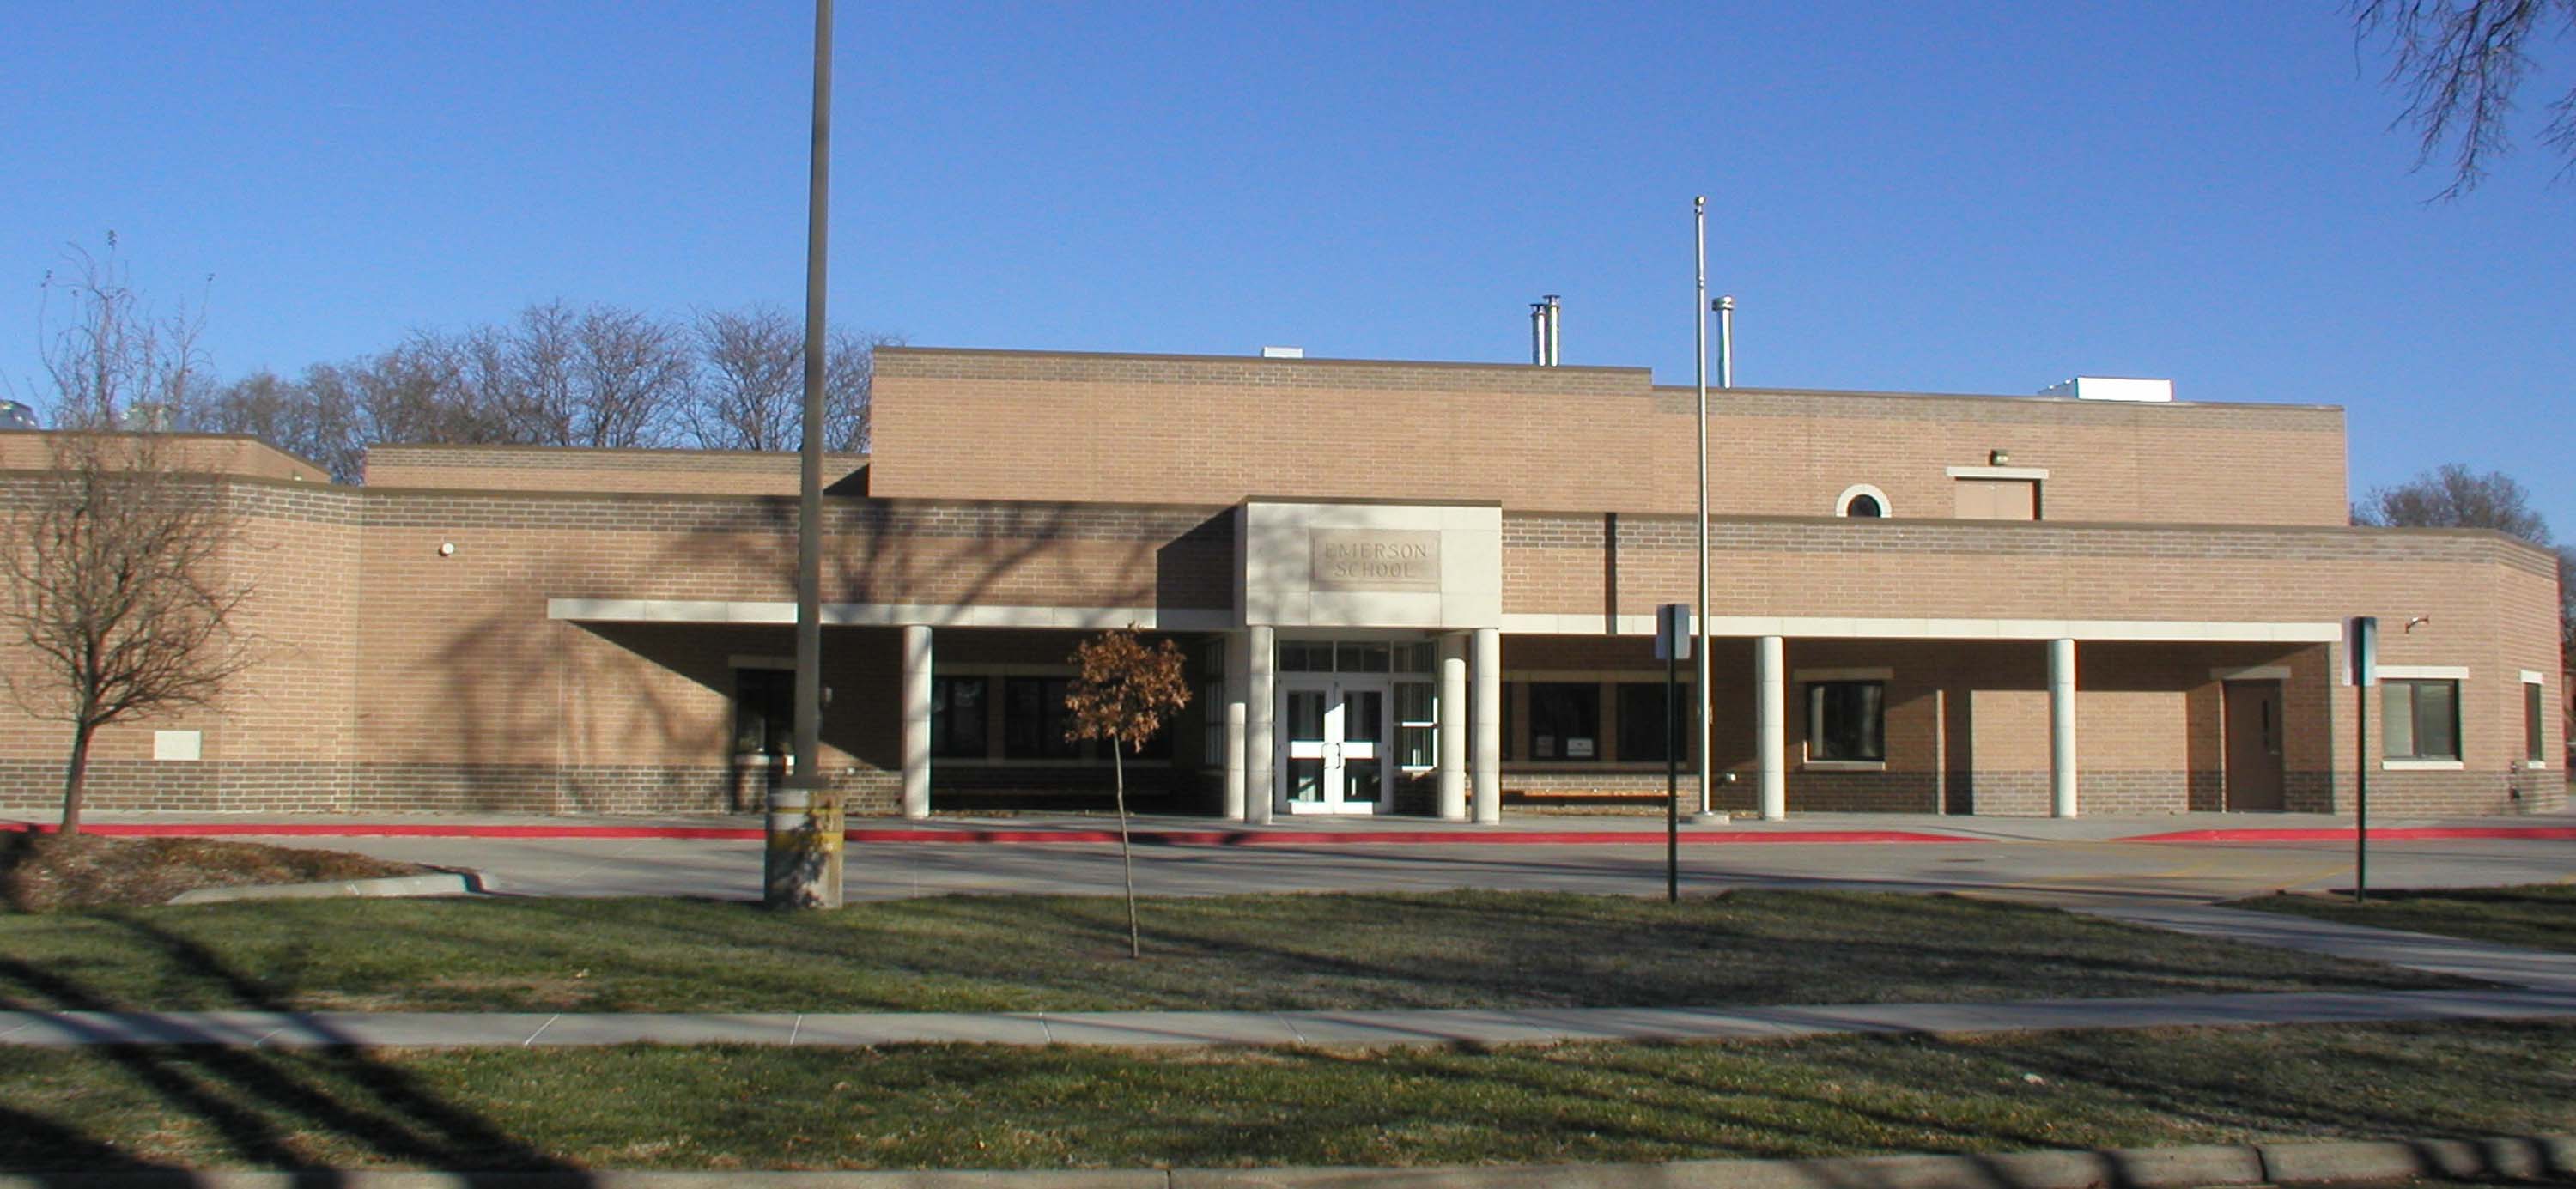 Emerson School Building